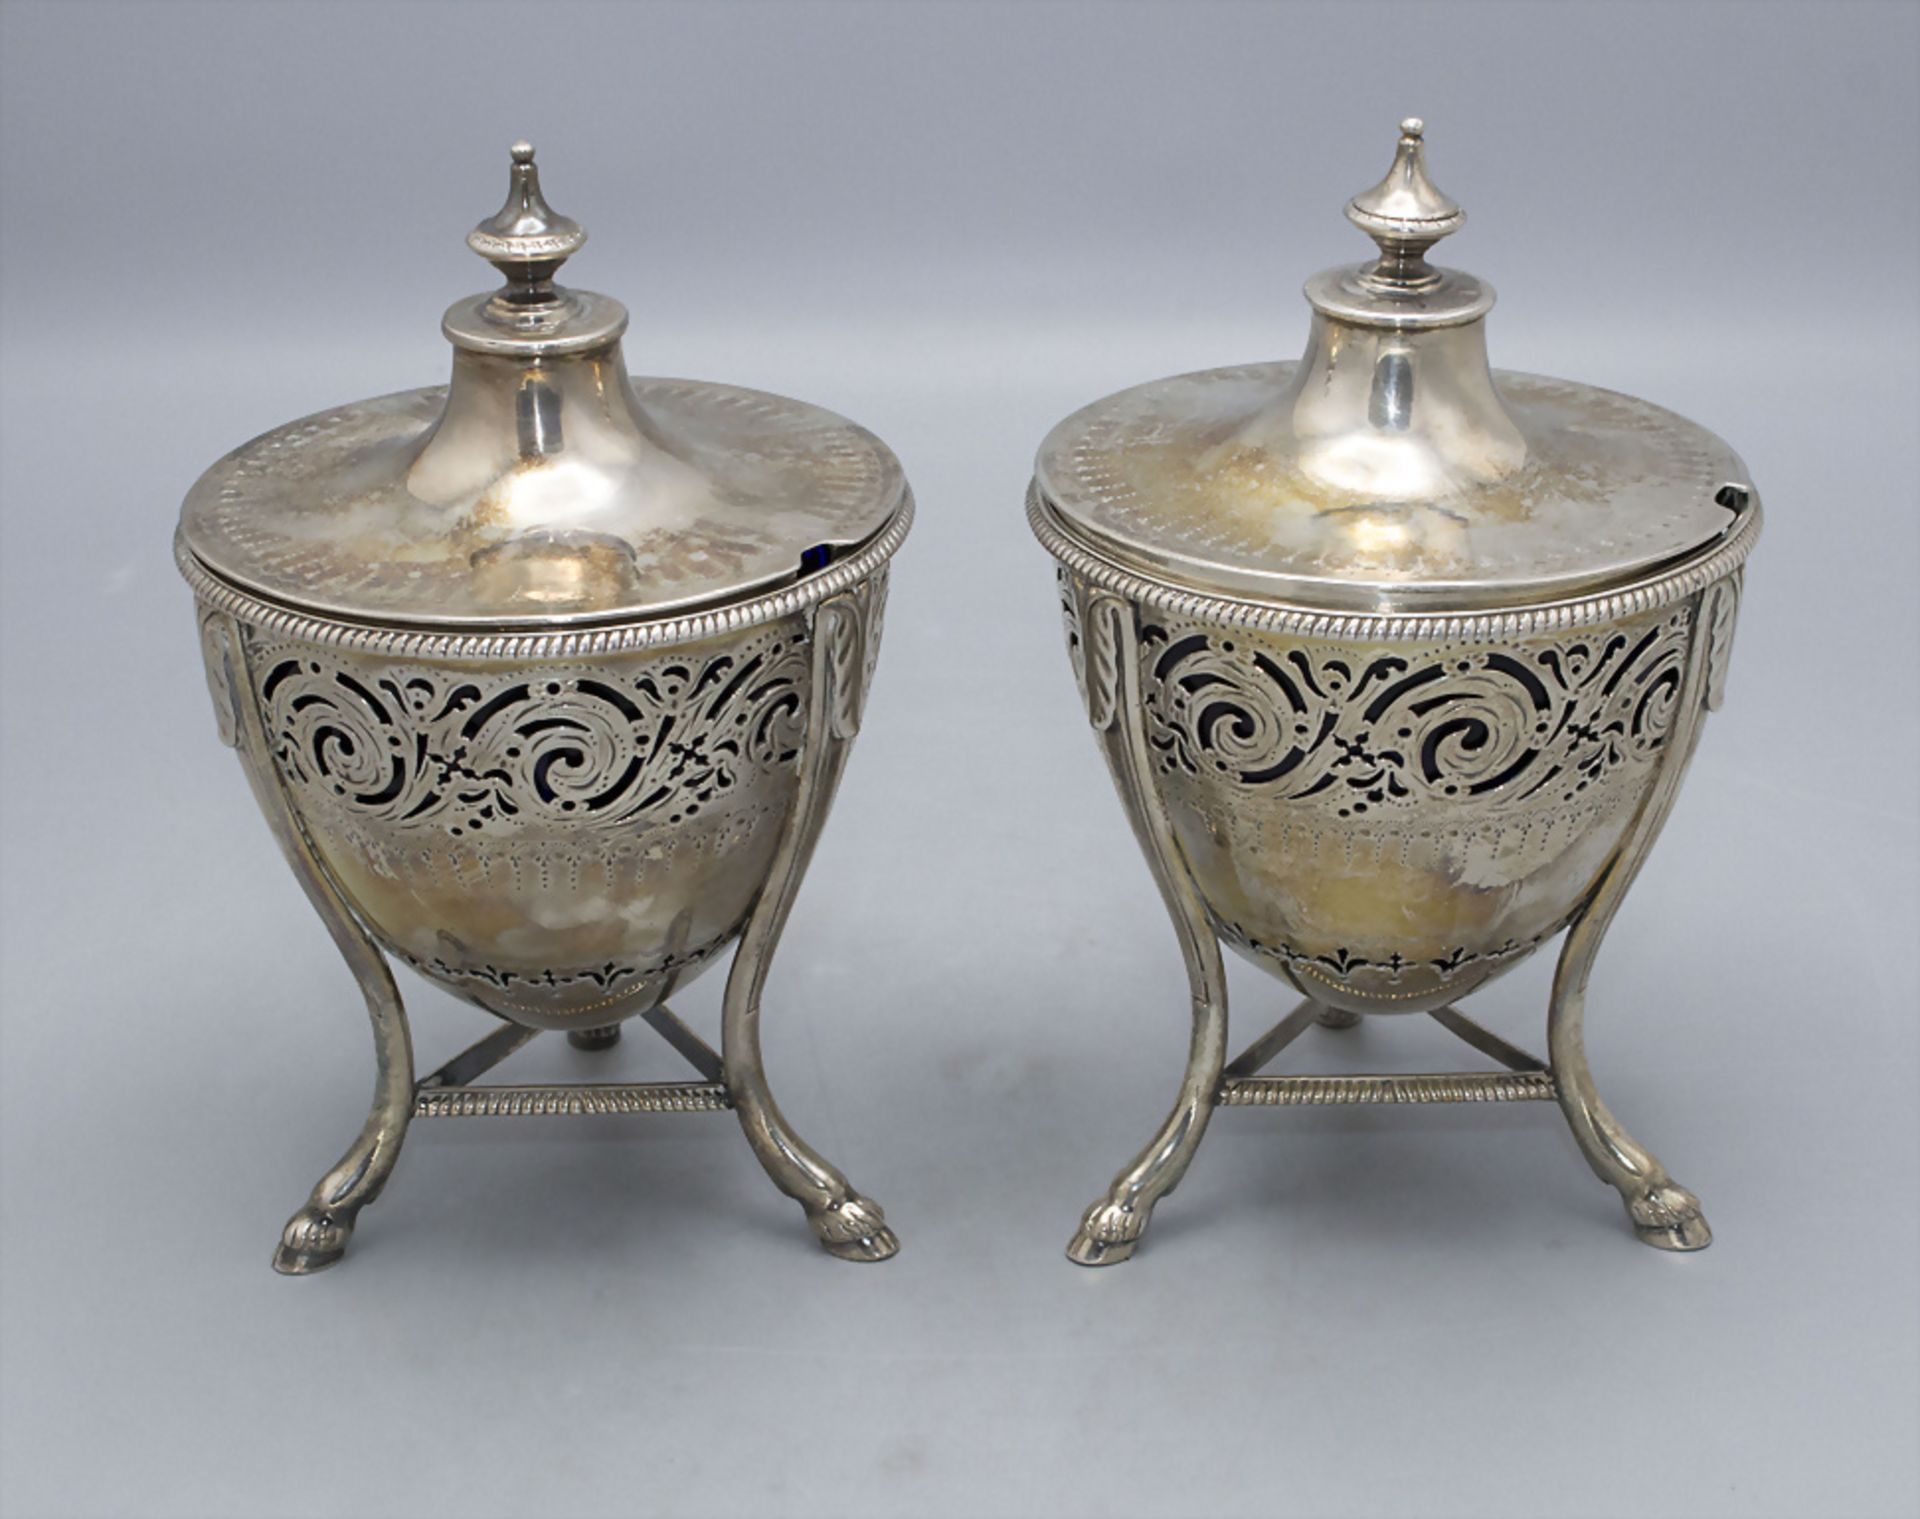 Zwei Konfitürenschalen / A pair of silver jam dishes, John Wakelin & Wm. Taylor, London, 1785